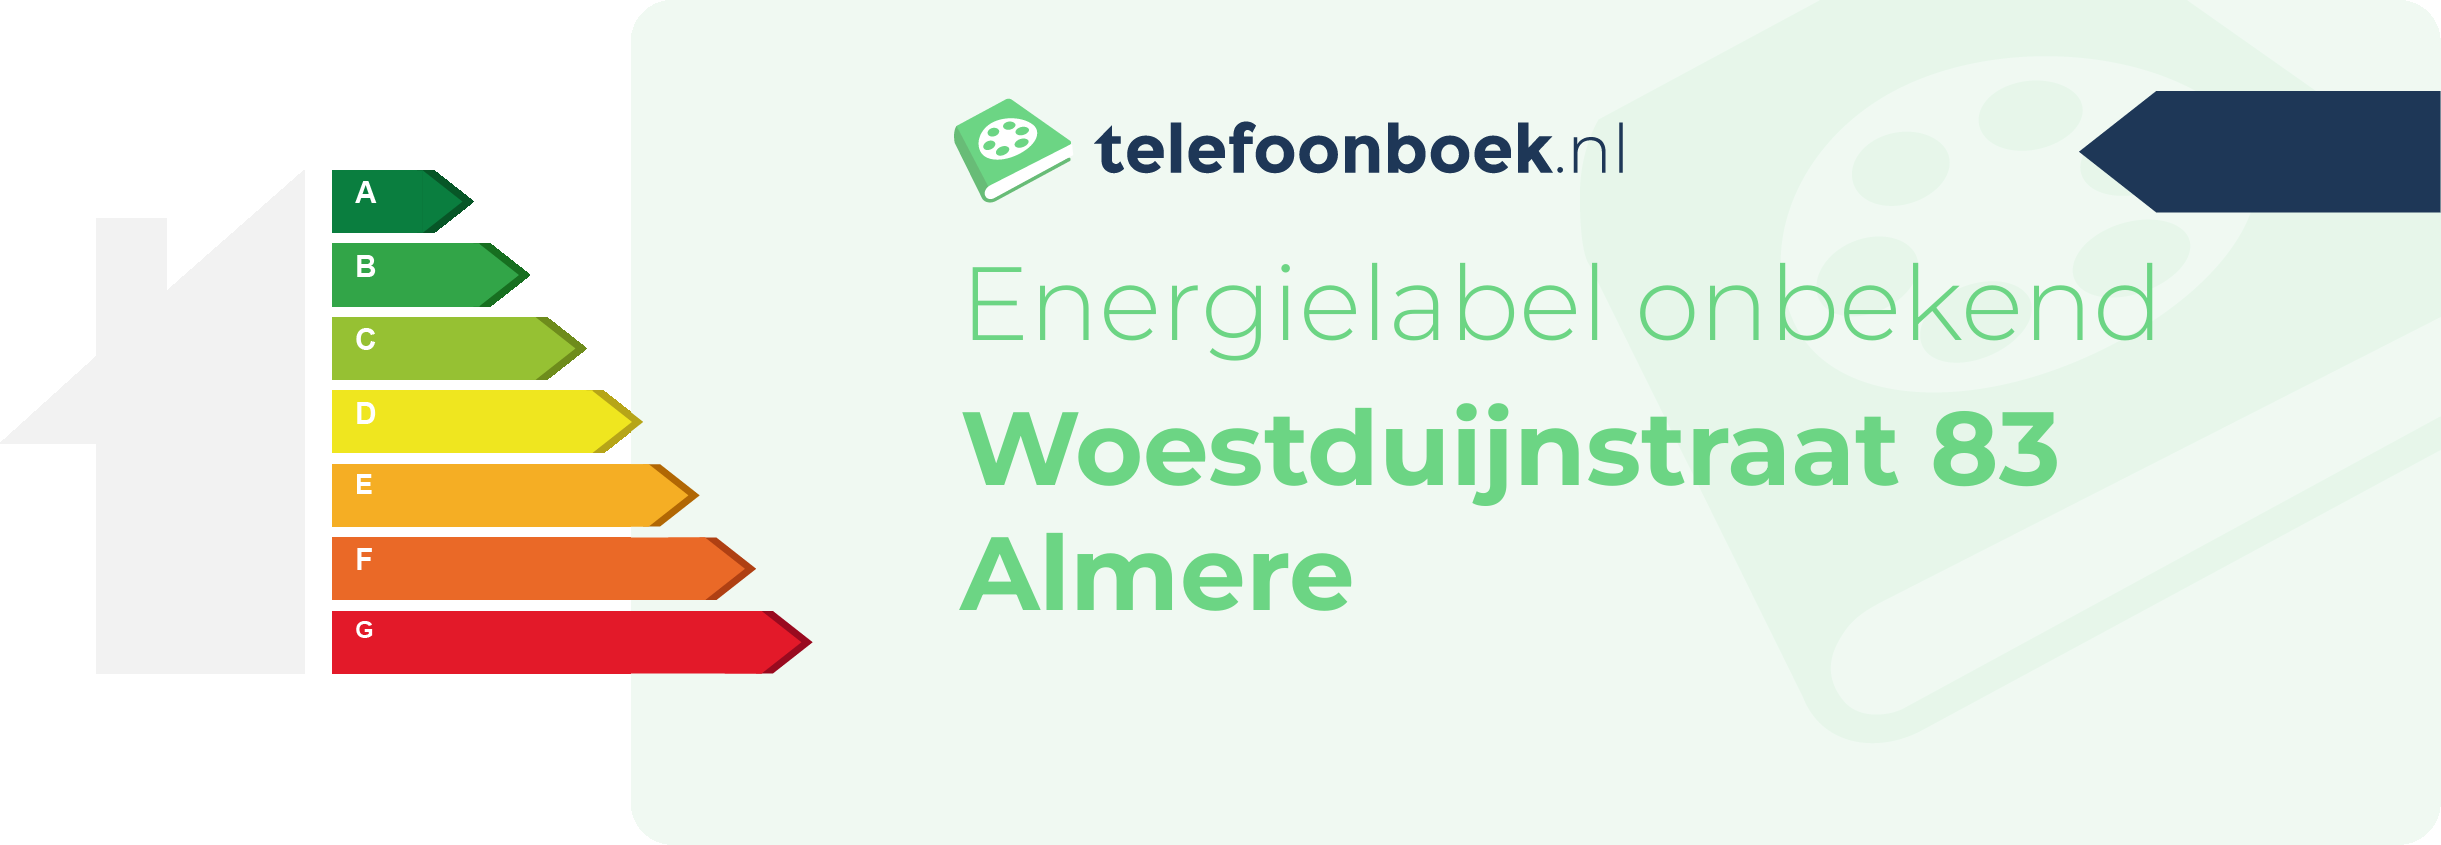 Energielabel Woestduijnstraat 83 Almere